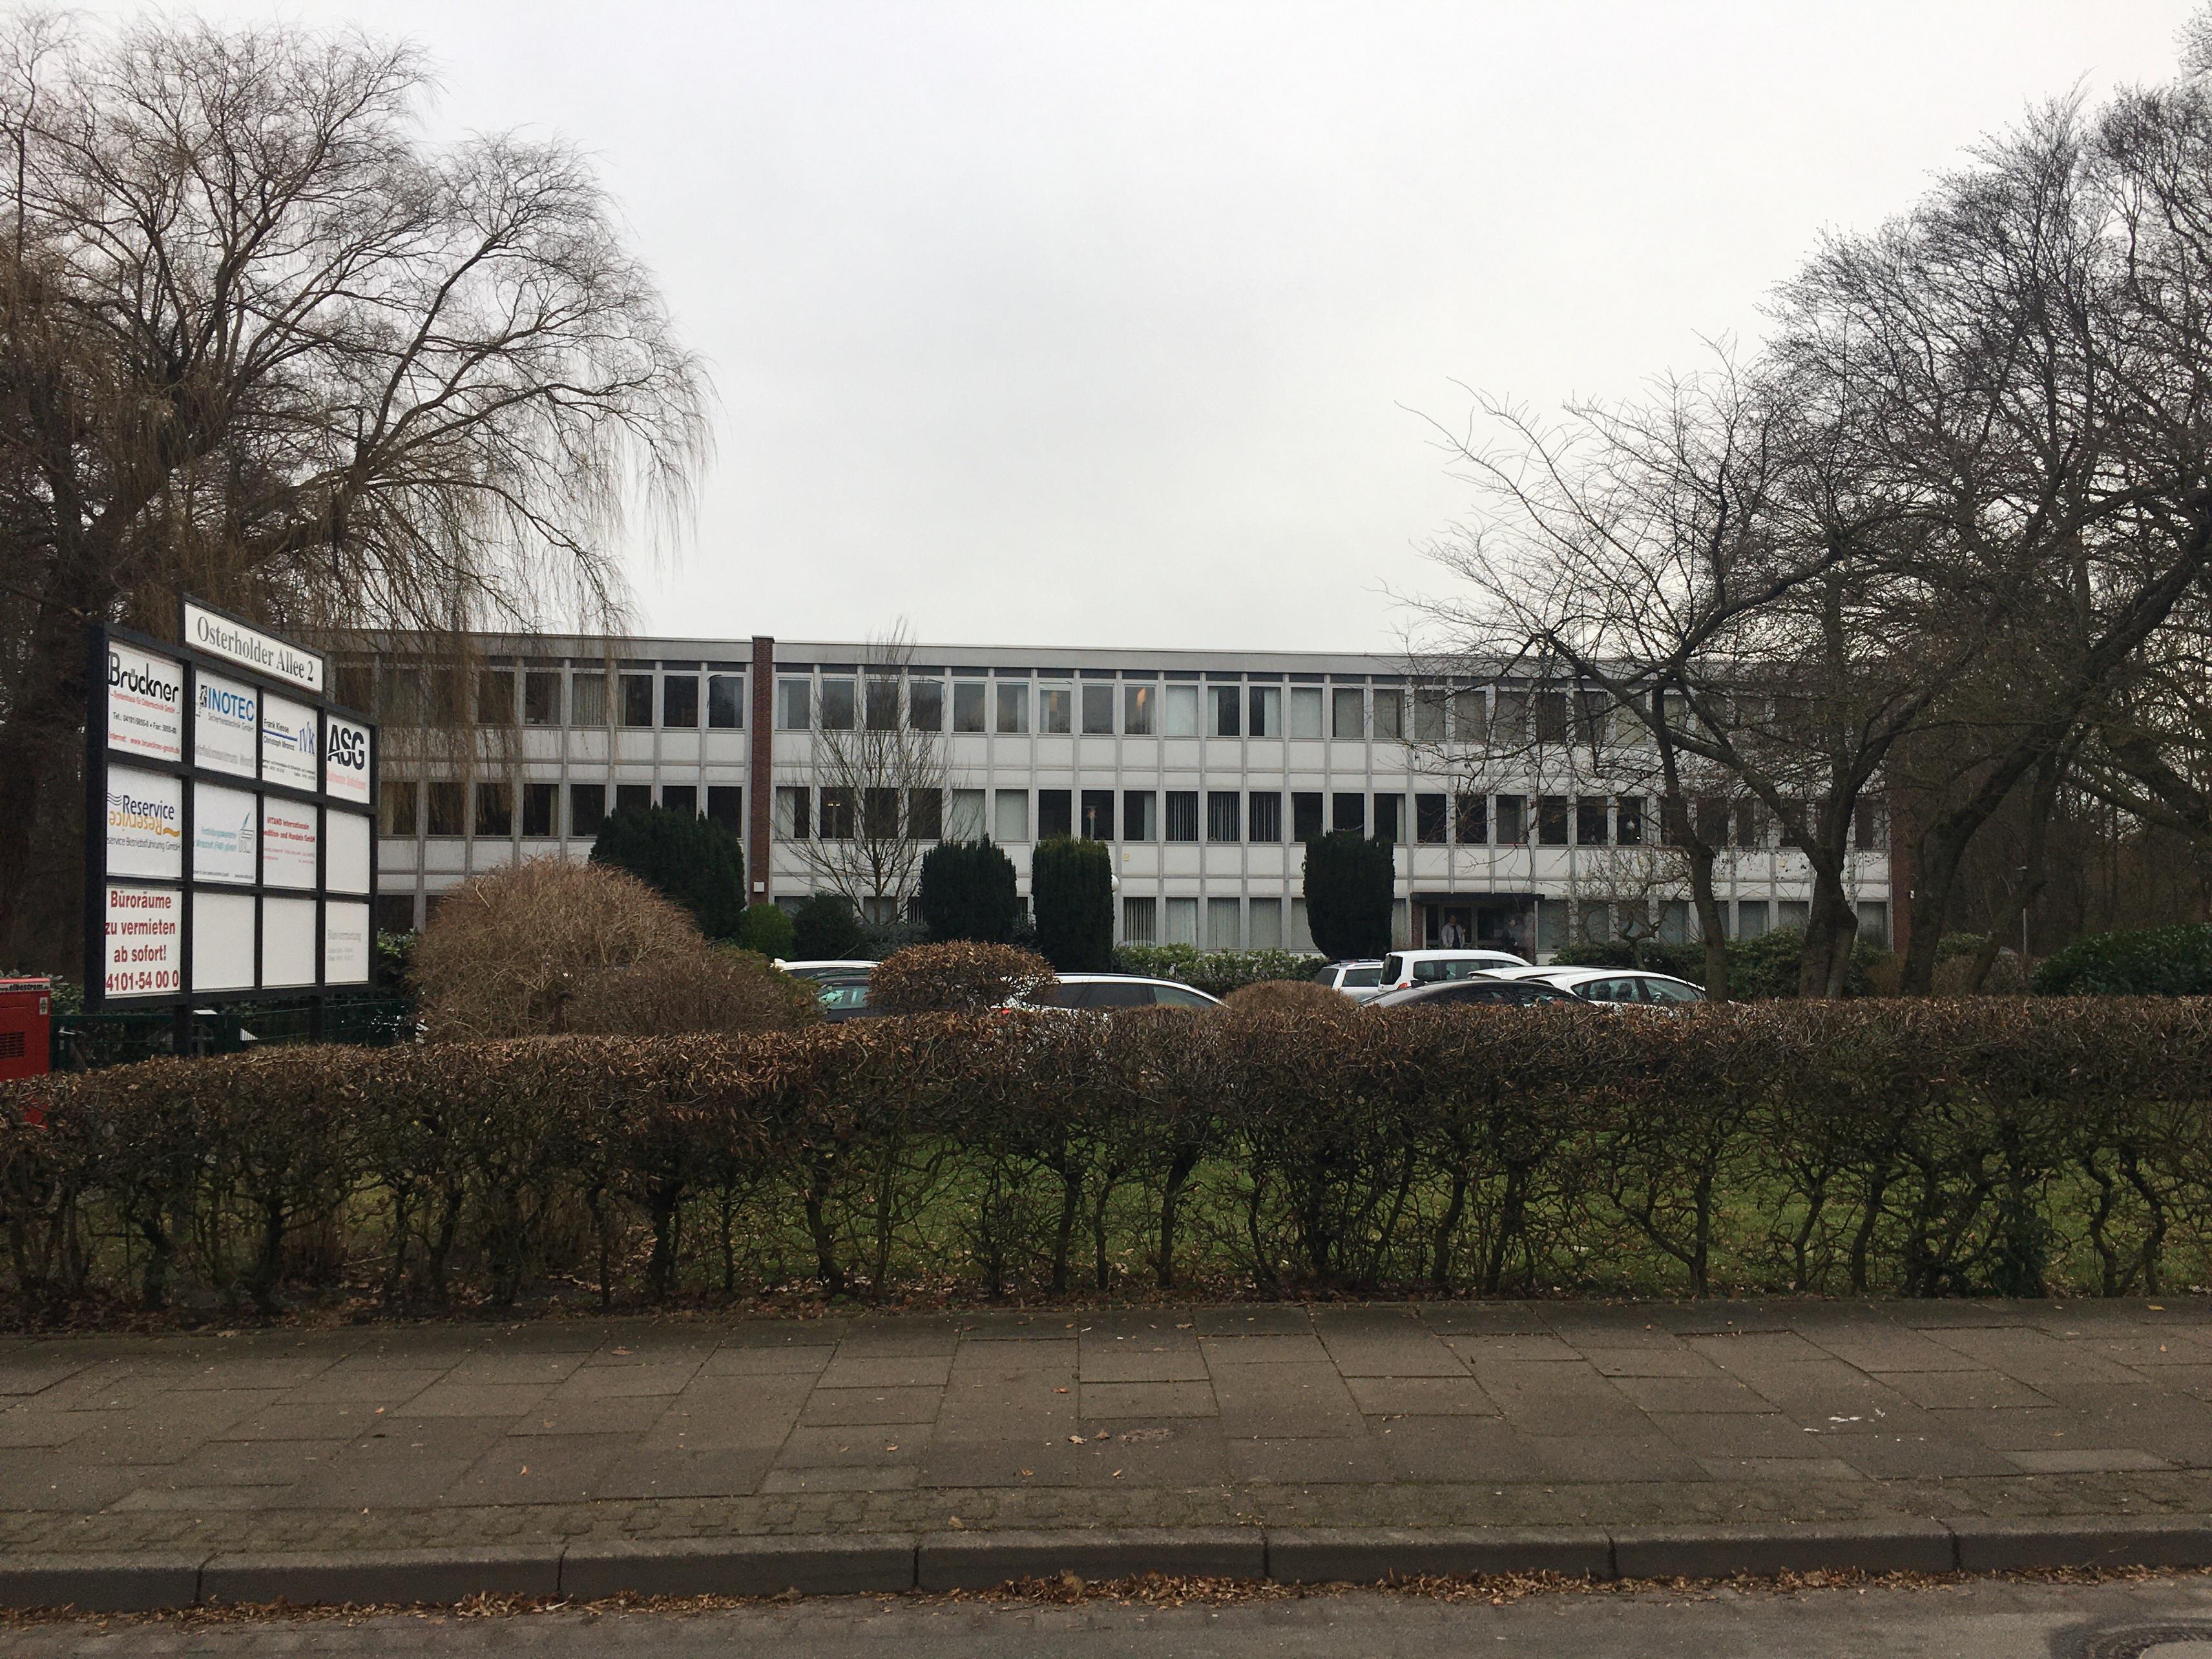 Brückner System GmbH, Osterholder Allee 2 in Pinneberg